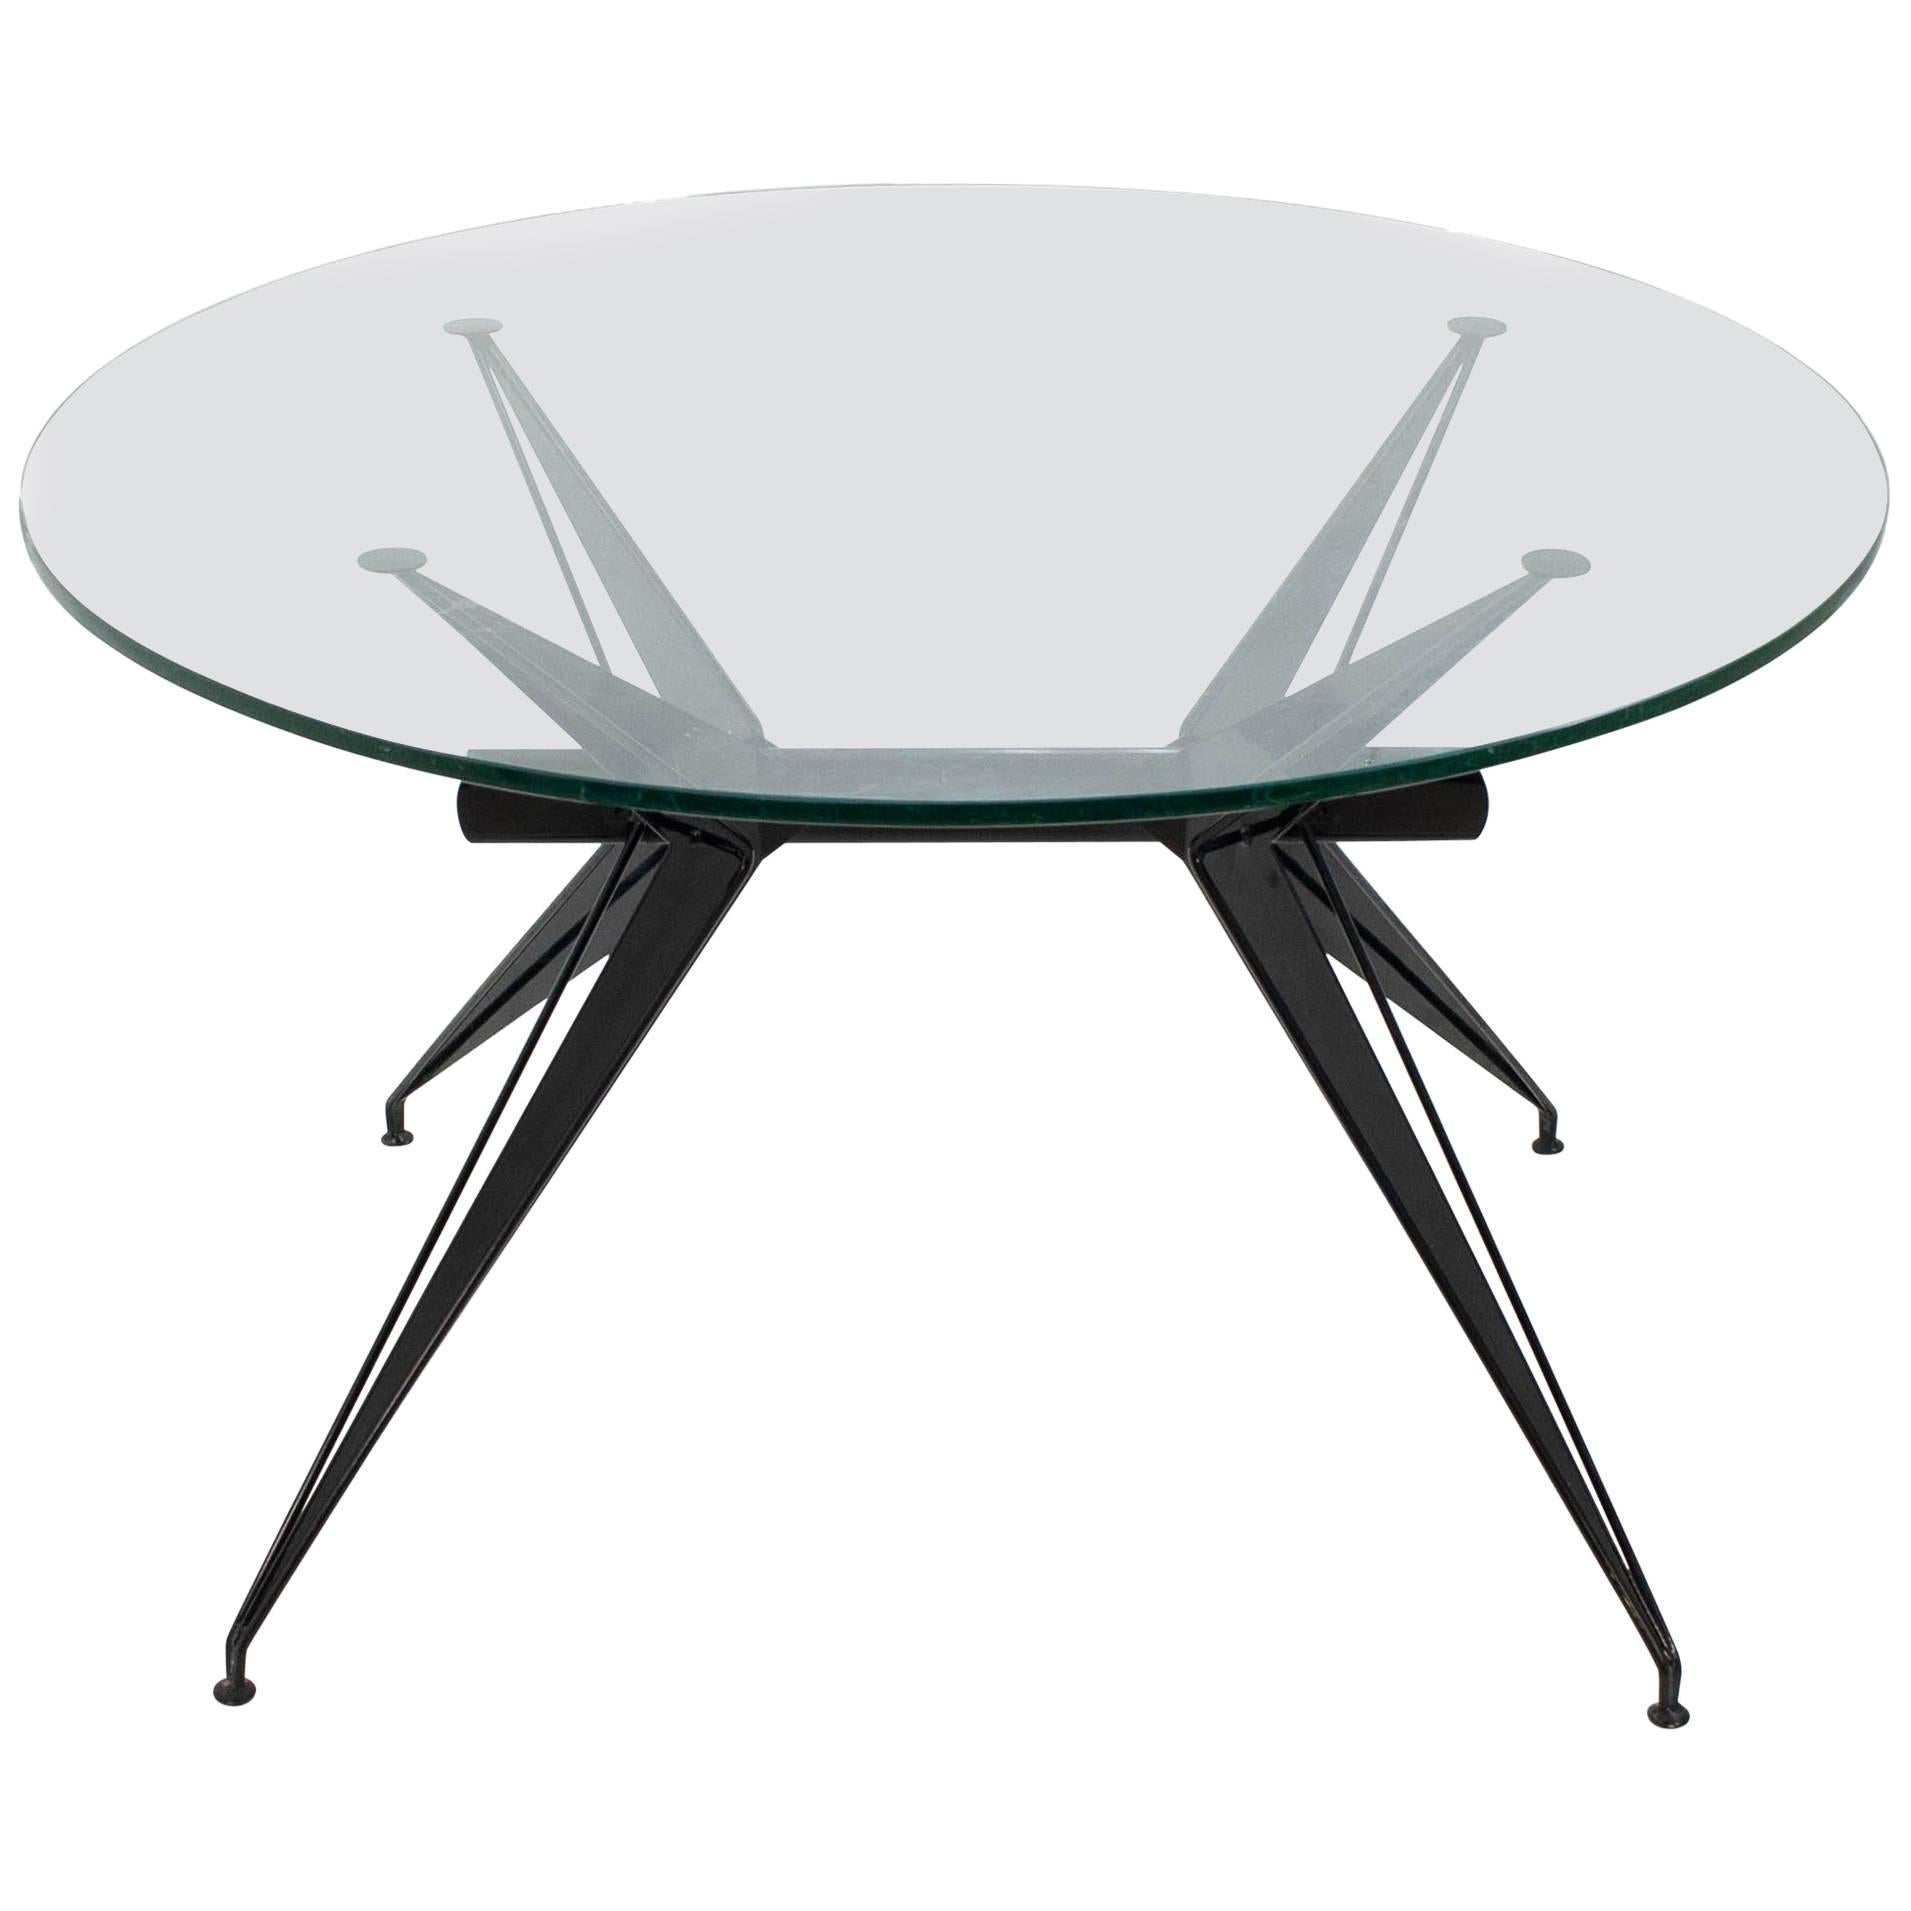 1960s Italian Modernist Table in the Style of Osvaldo Borsani for Tecno